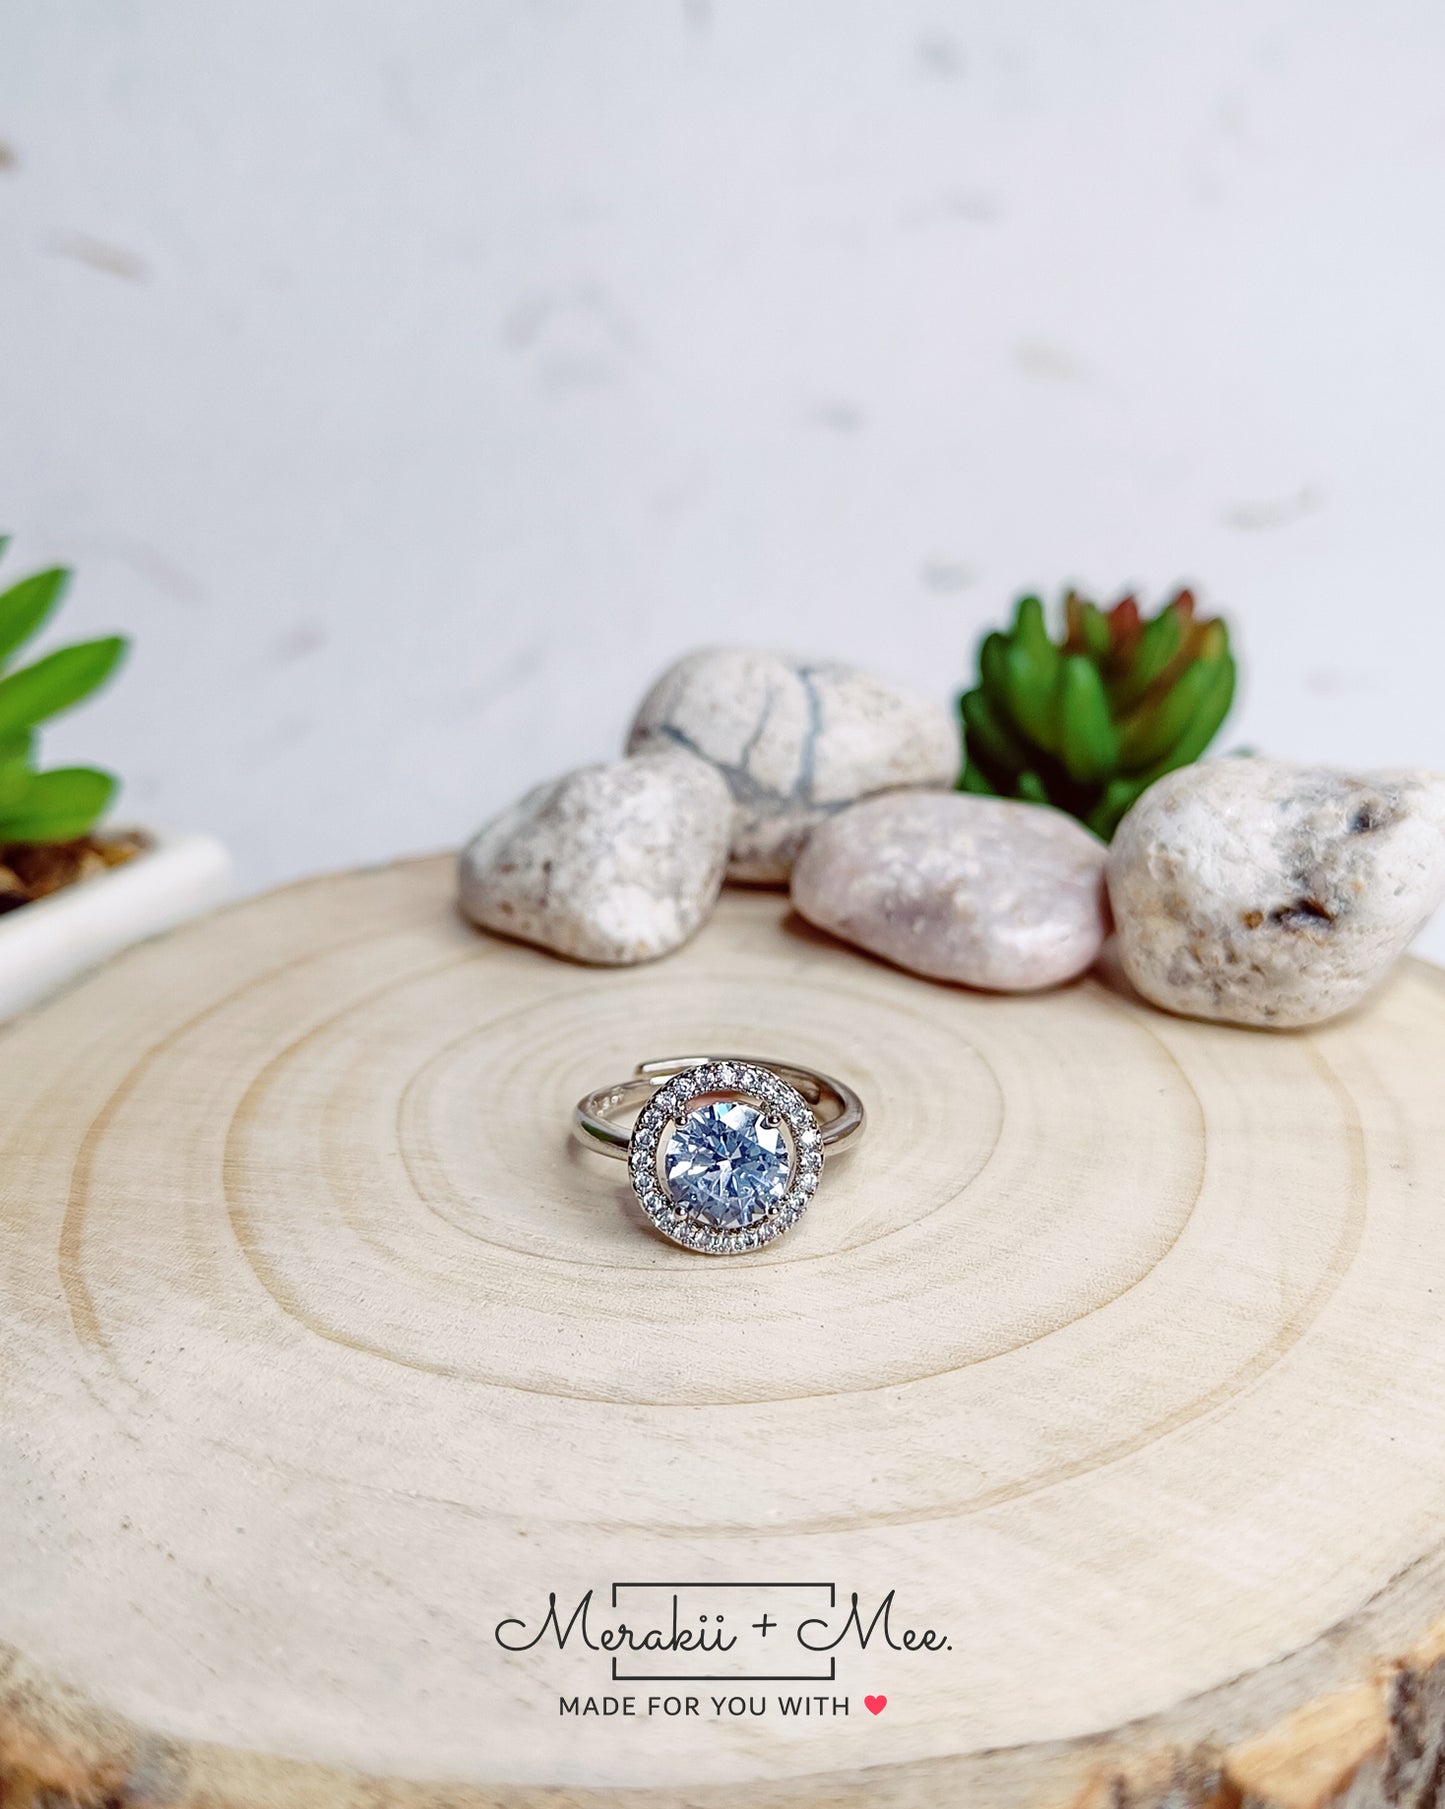 Luna's Diamond Ring